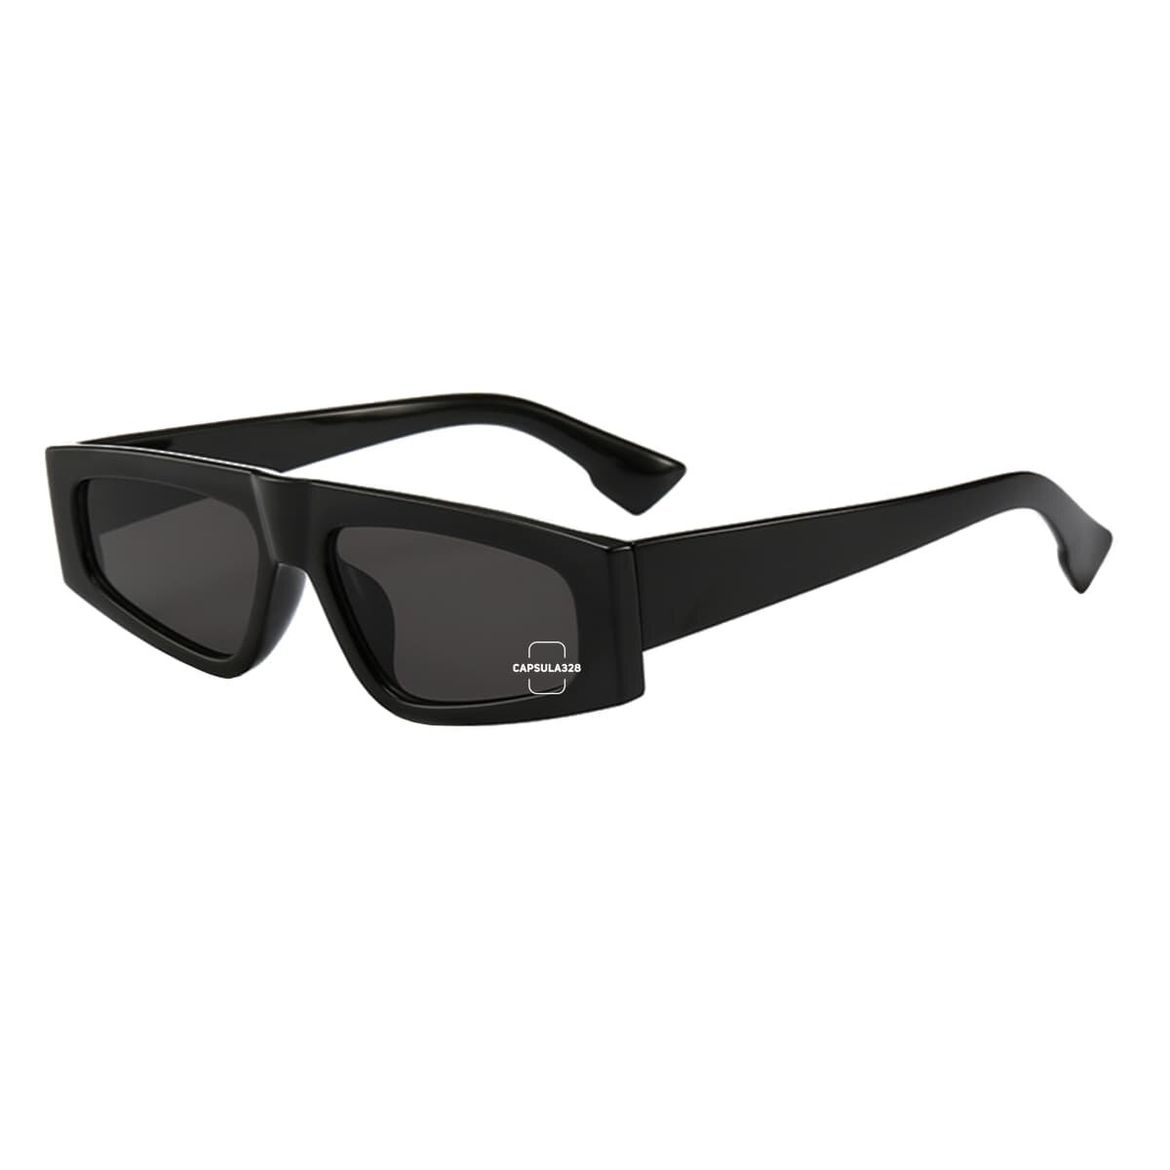 Солнцезащитные очки Komo 3141